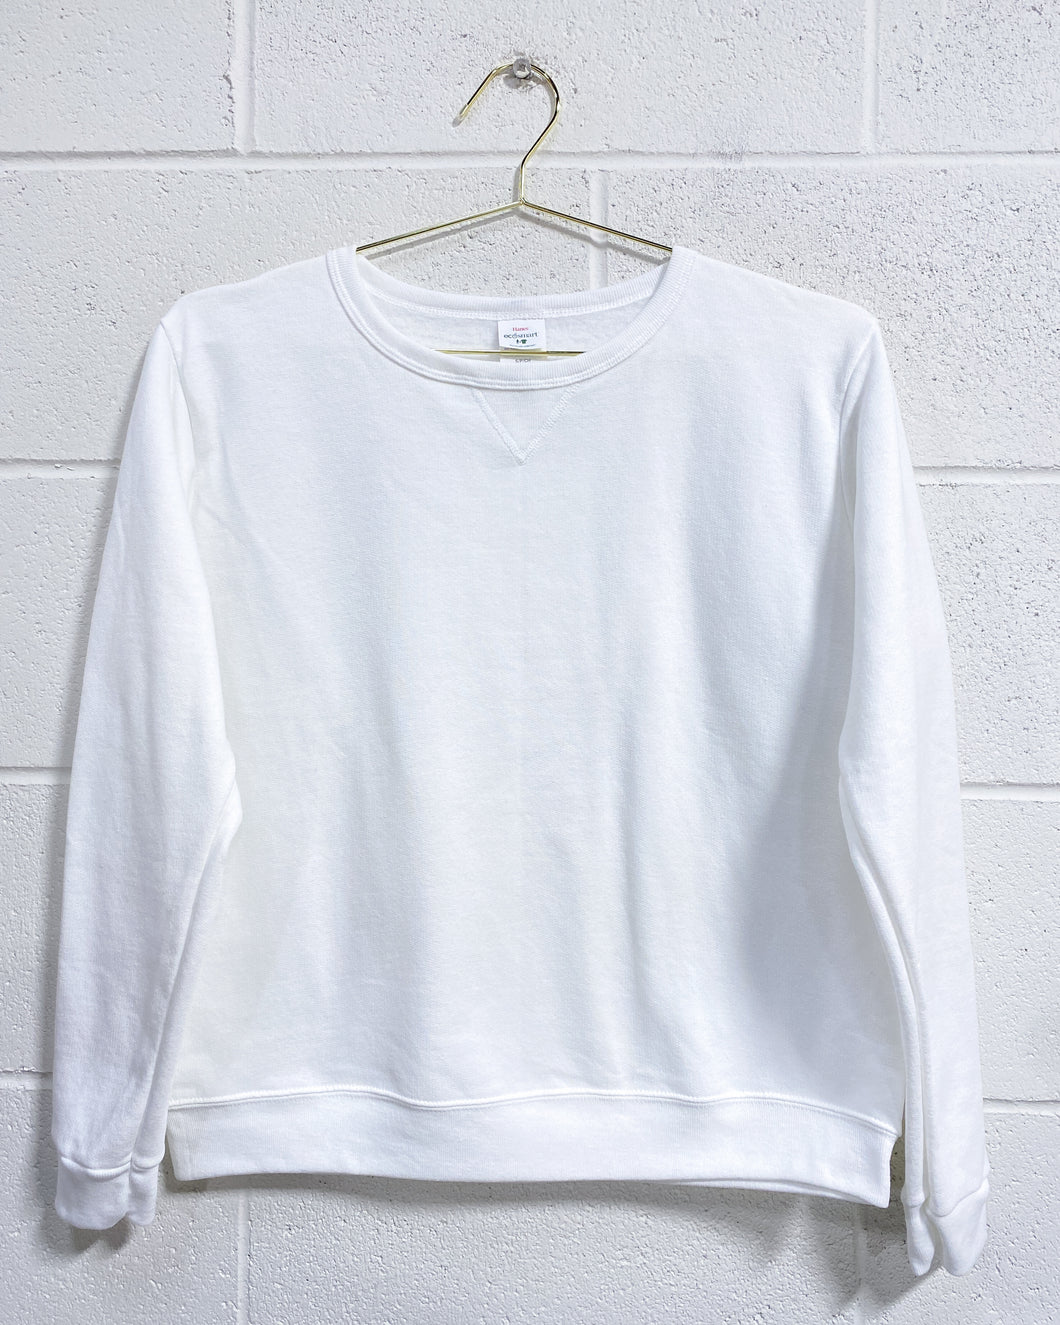 Hanes White Sweatshirt (S)